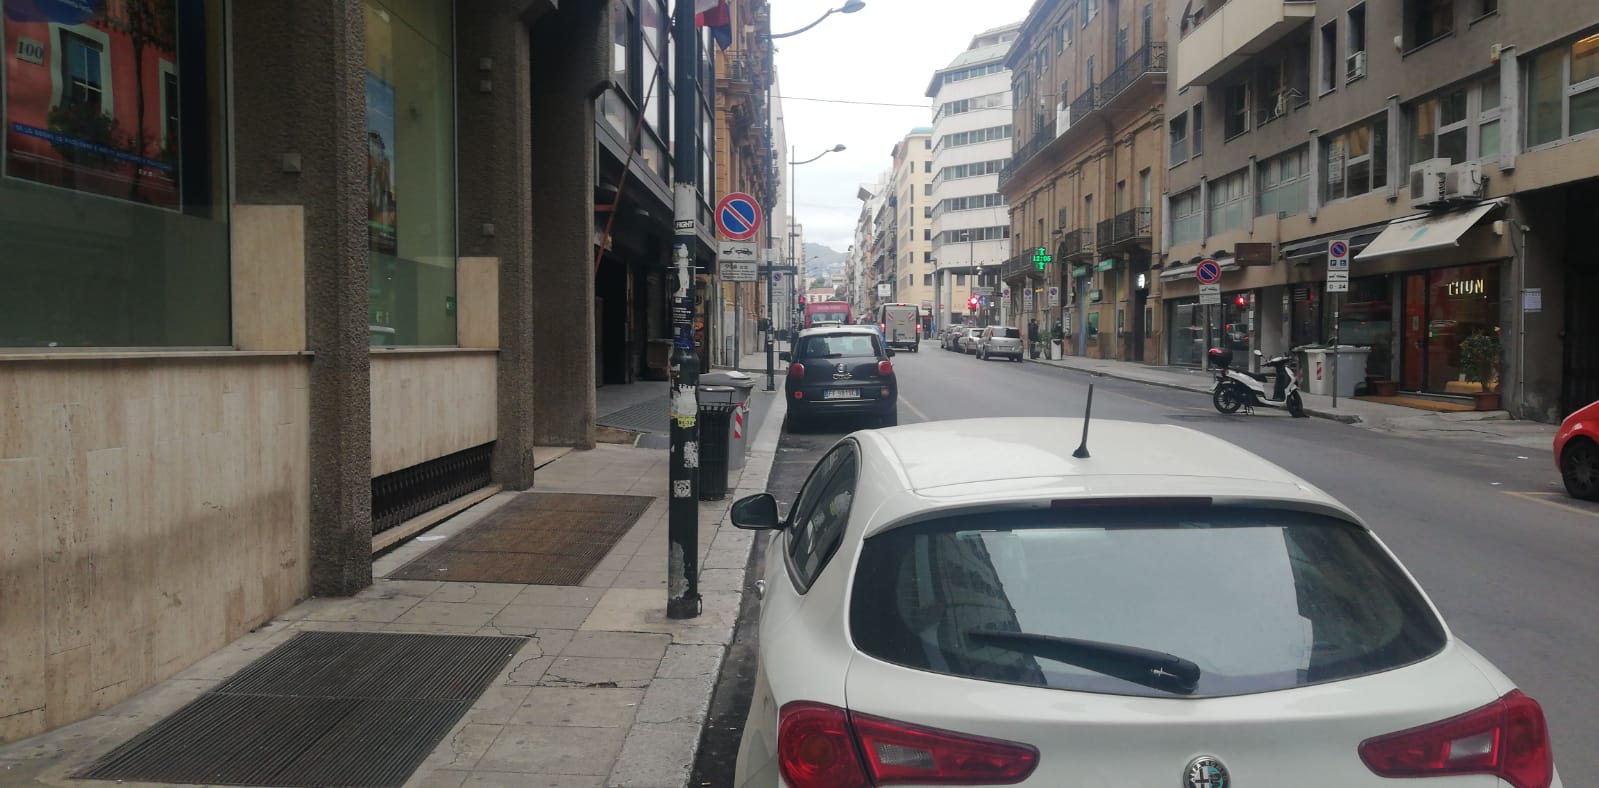 Palermo, magistrato insegue a piedi un ladro in fuga e lo fotografa